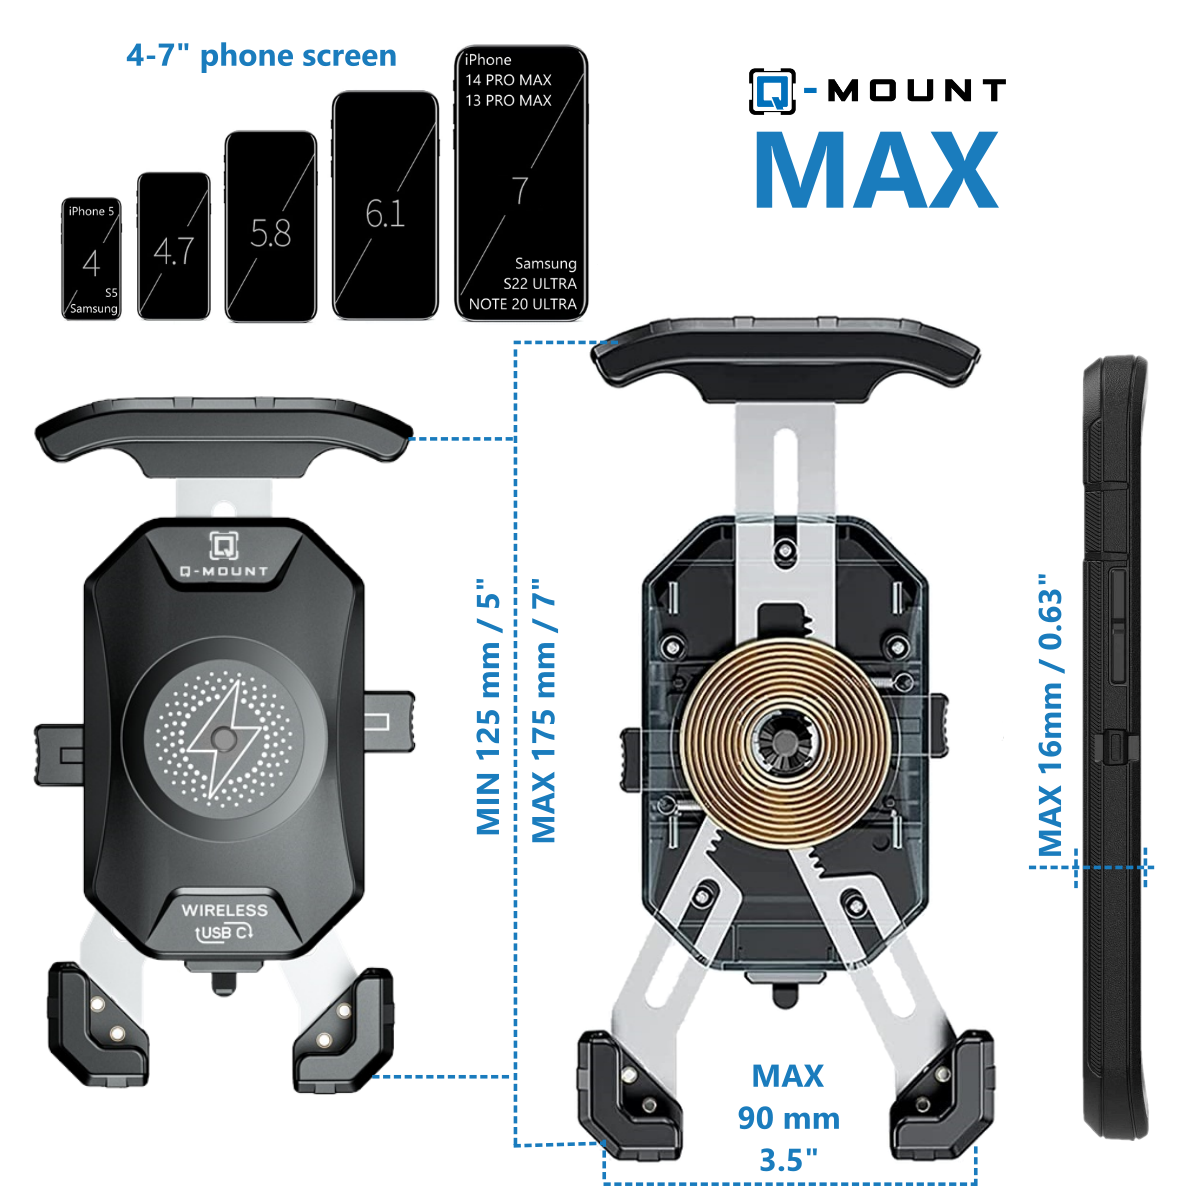 Q-MOUNT MAX